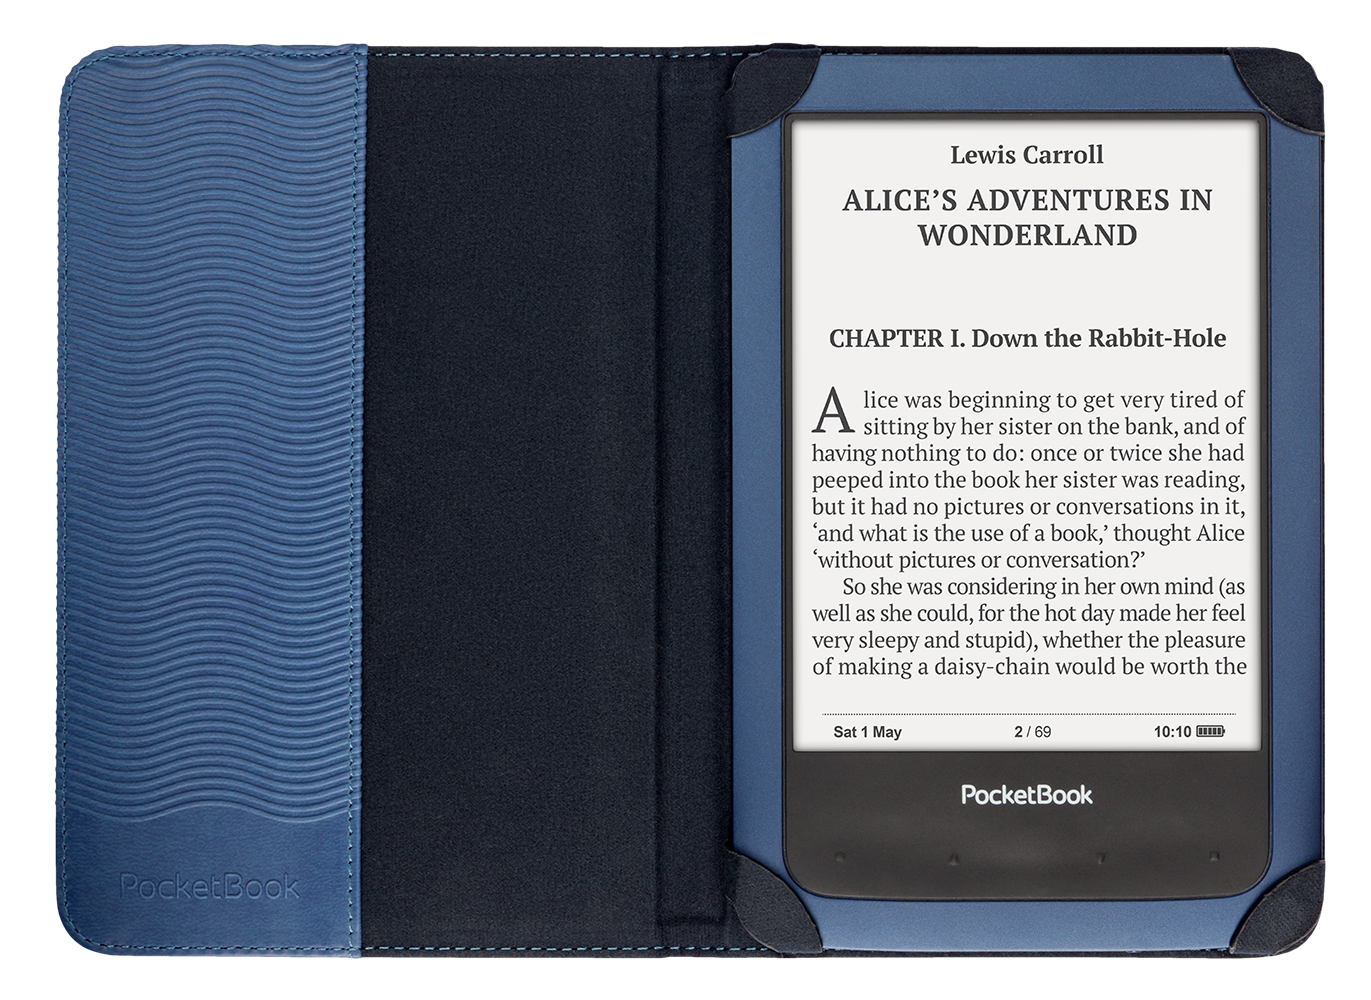 PocketBook Shell Cover voot PocketBook Aqua, blauw (PBPCC-640-BL)